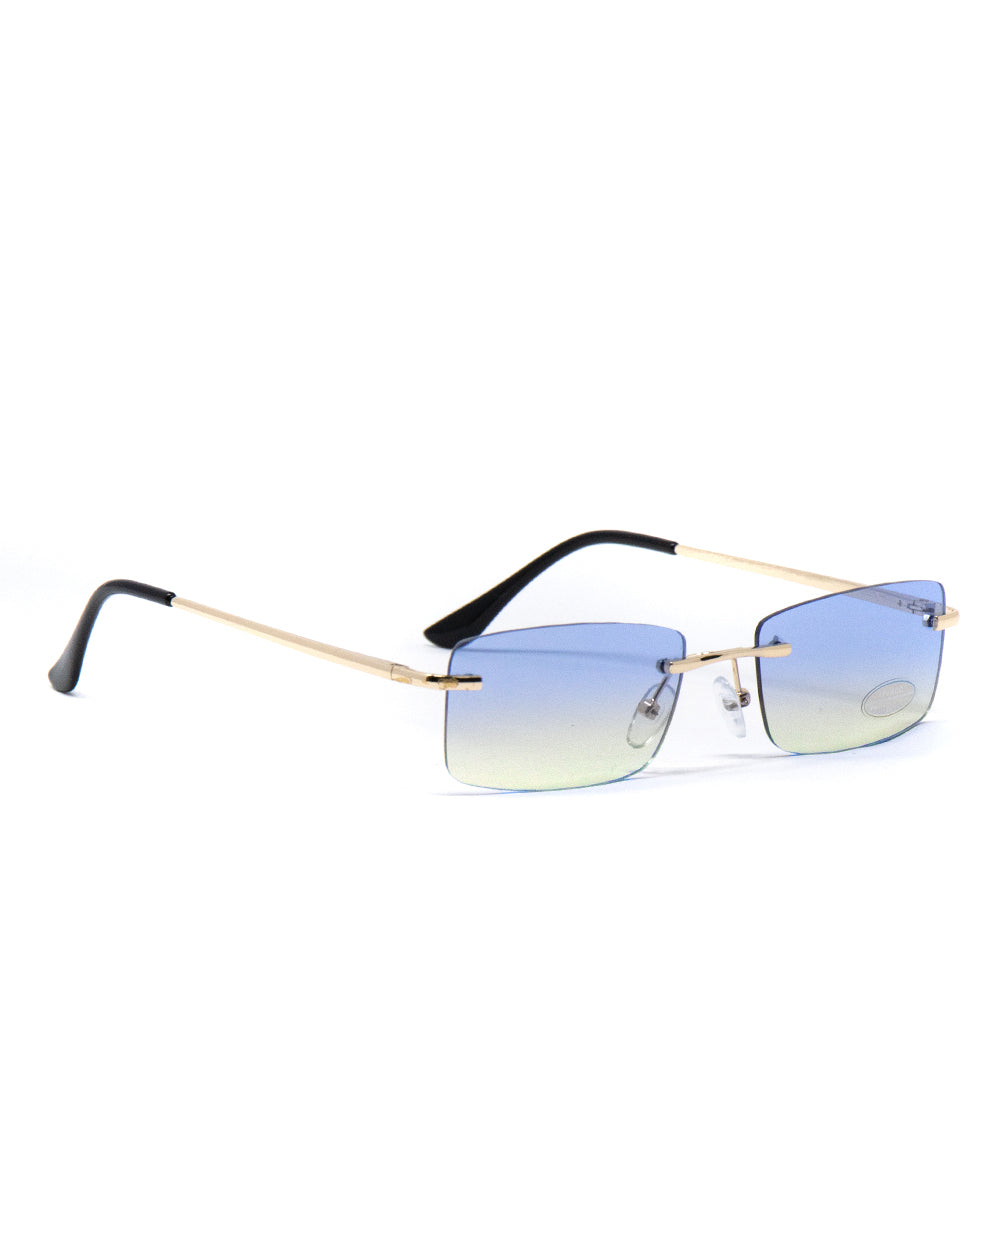 Occhiali da Sole Uomo Unisex Sunglasses Lenti Multicolore Squadrate Casual Sottili GIOSAL-OC1058A